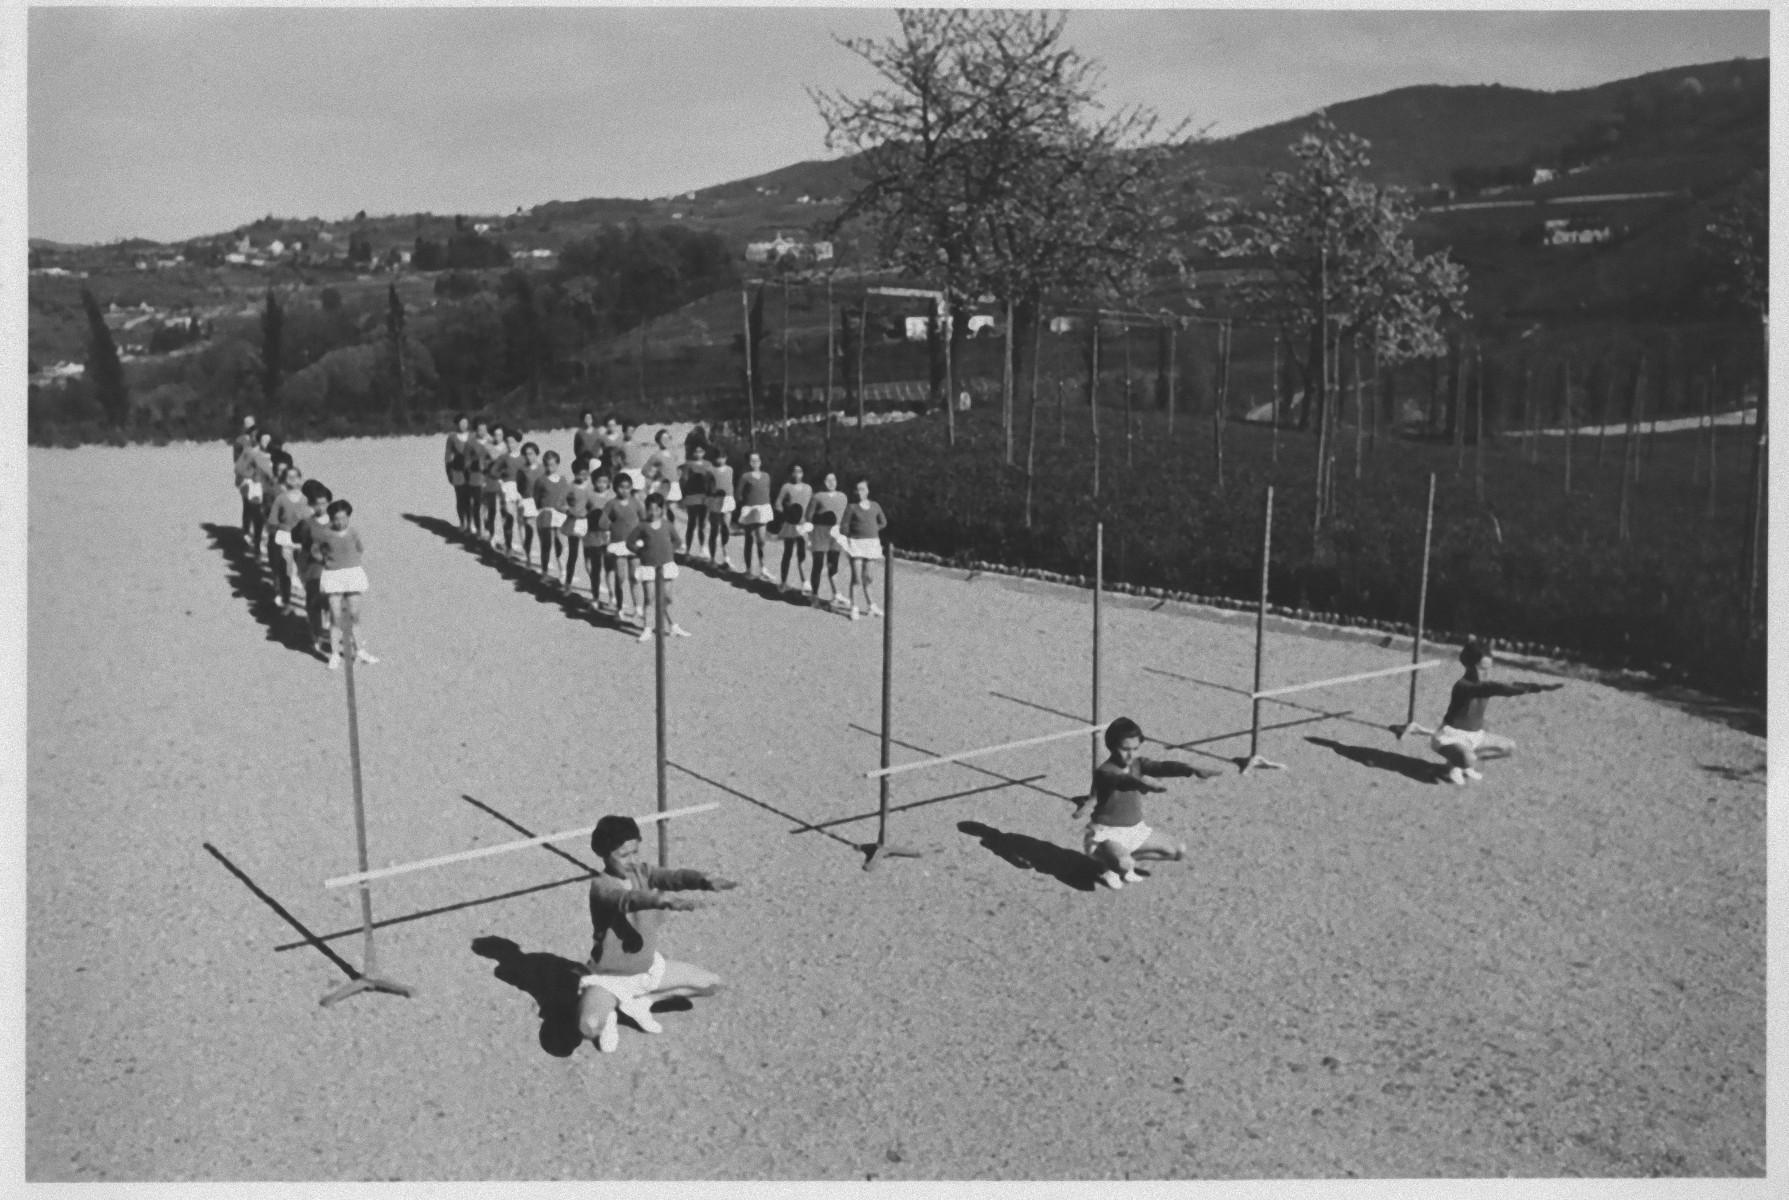 Unknown Figurative Photograph – Outdoor-physische Ausbildung während des Fascismus in Italien - b/w Foto - 1930 c.a.